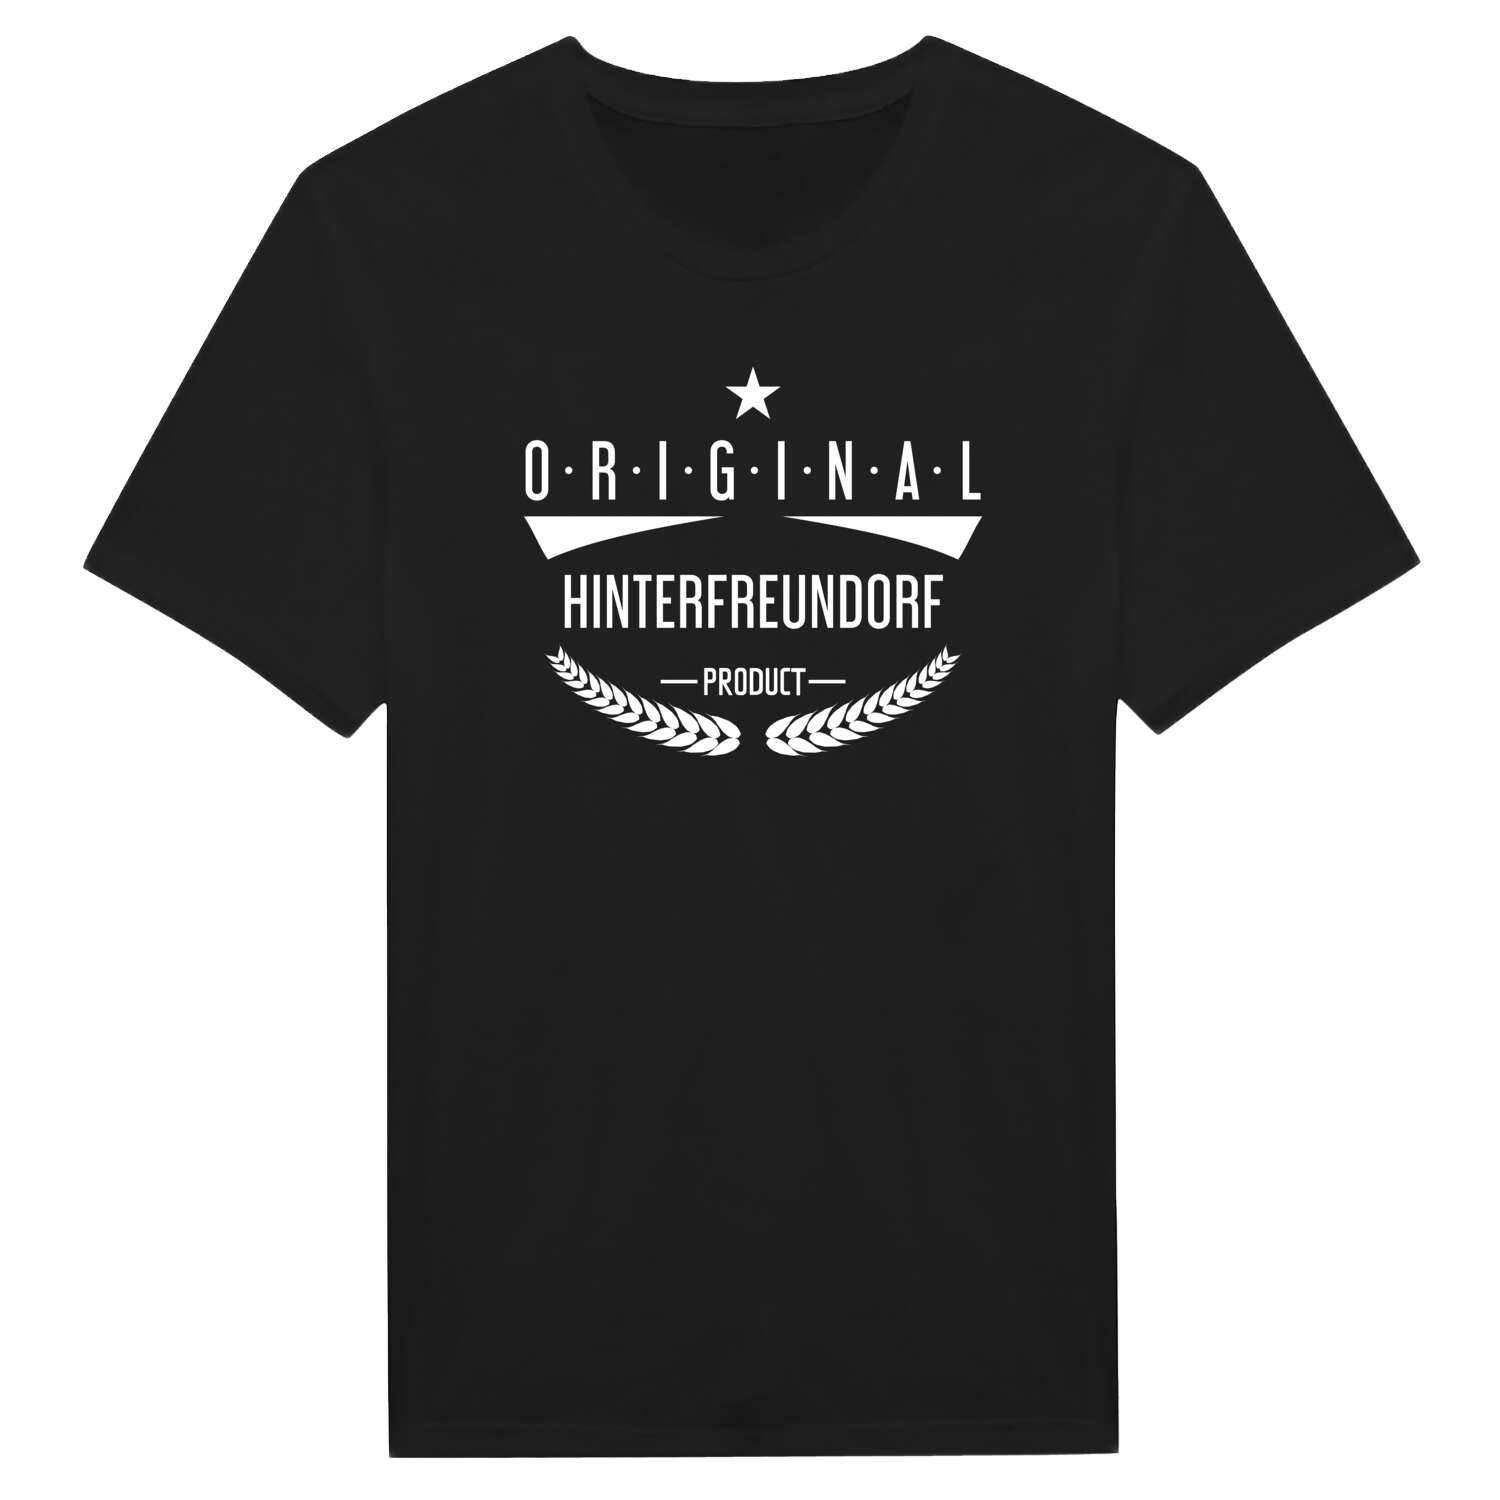 Hinterfreundorf T-Shirt »Original Product«